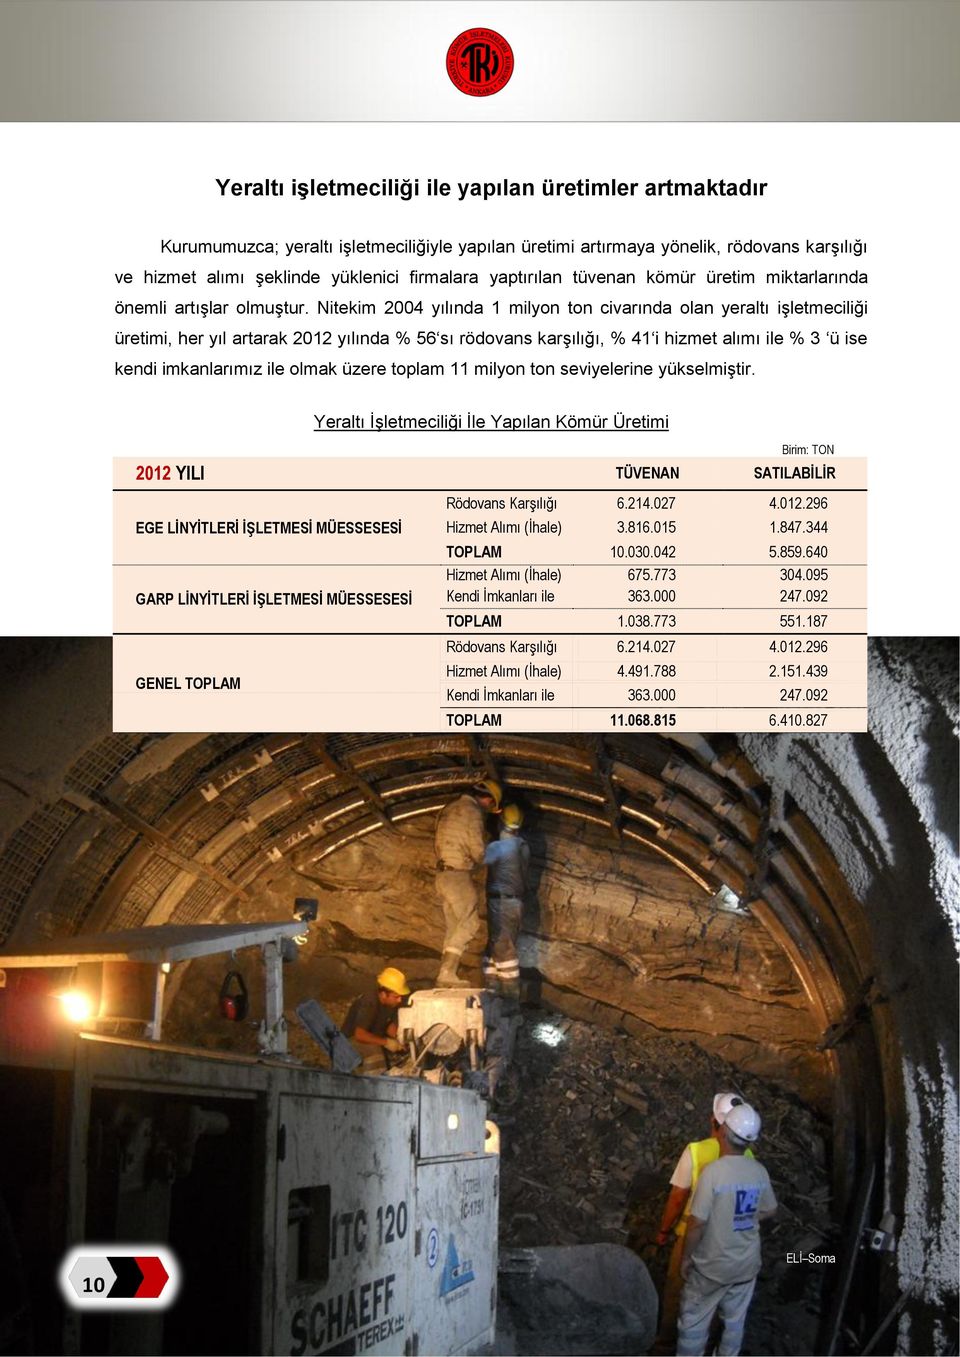 Nitekim 2004 yılında 1 milyon ton civarında olan yeraltı işletmeciliği üretimi, her yıl artarak 2012 yılında 56 sı rödovans karşılığı, 41 i hizmet alımı ile 3 ü ise kendi imkanlarımız ile olmak üzere